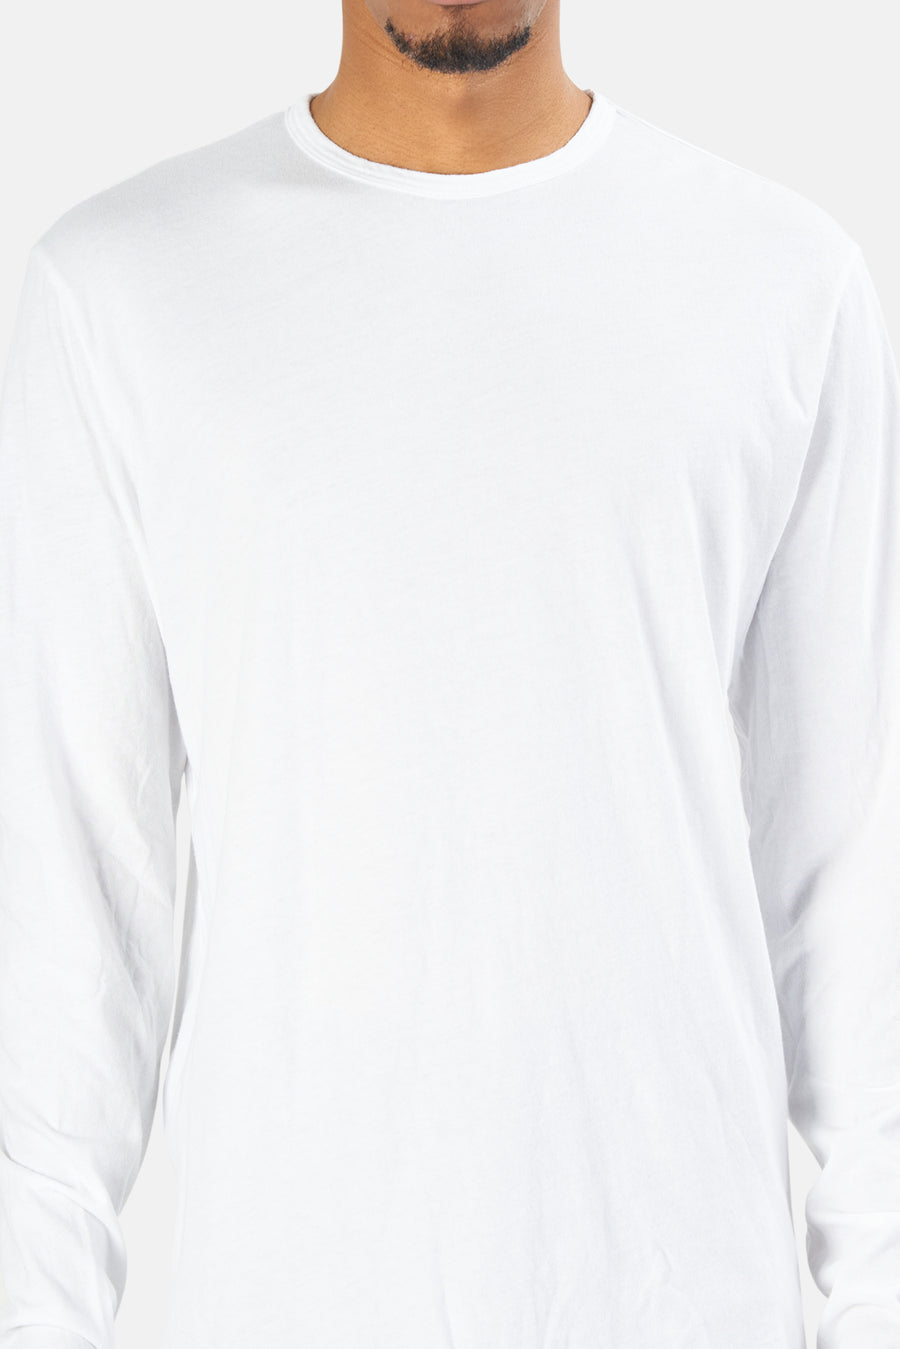 Jagger Long Sleeve Shirt White - blueandcream